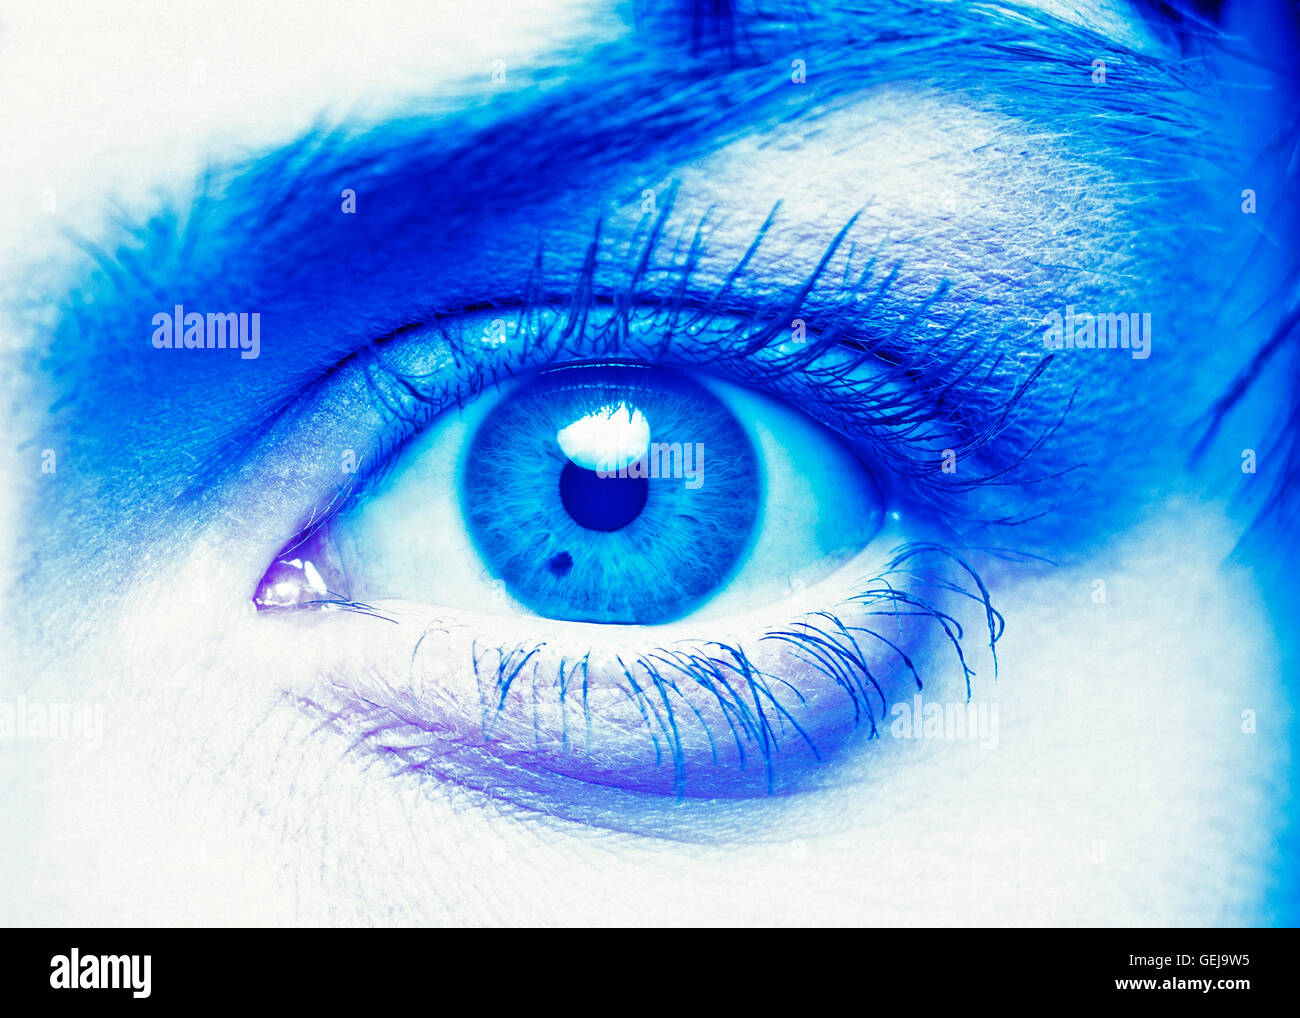 Un molto close-up shot di una singola donna occhio con una monocromatica tonalità blu Foto Stock